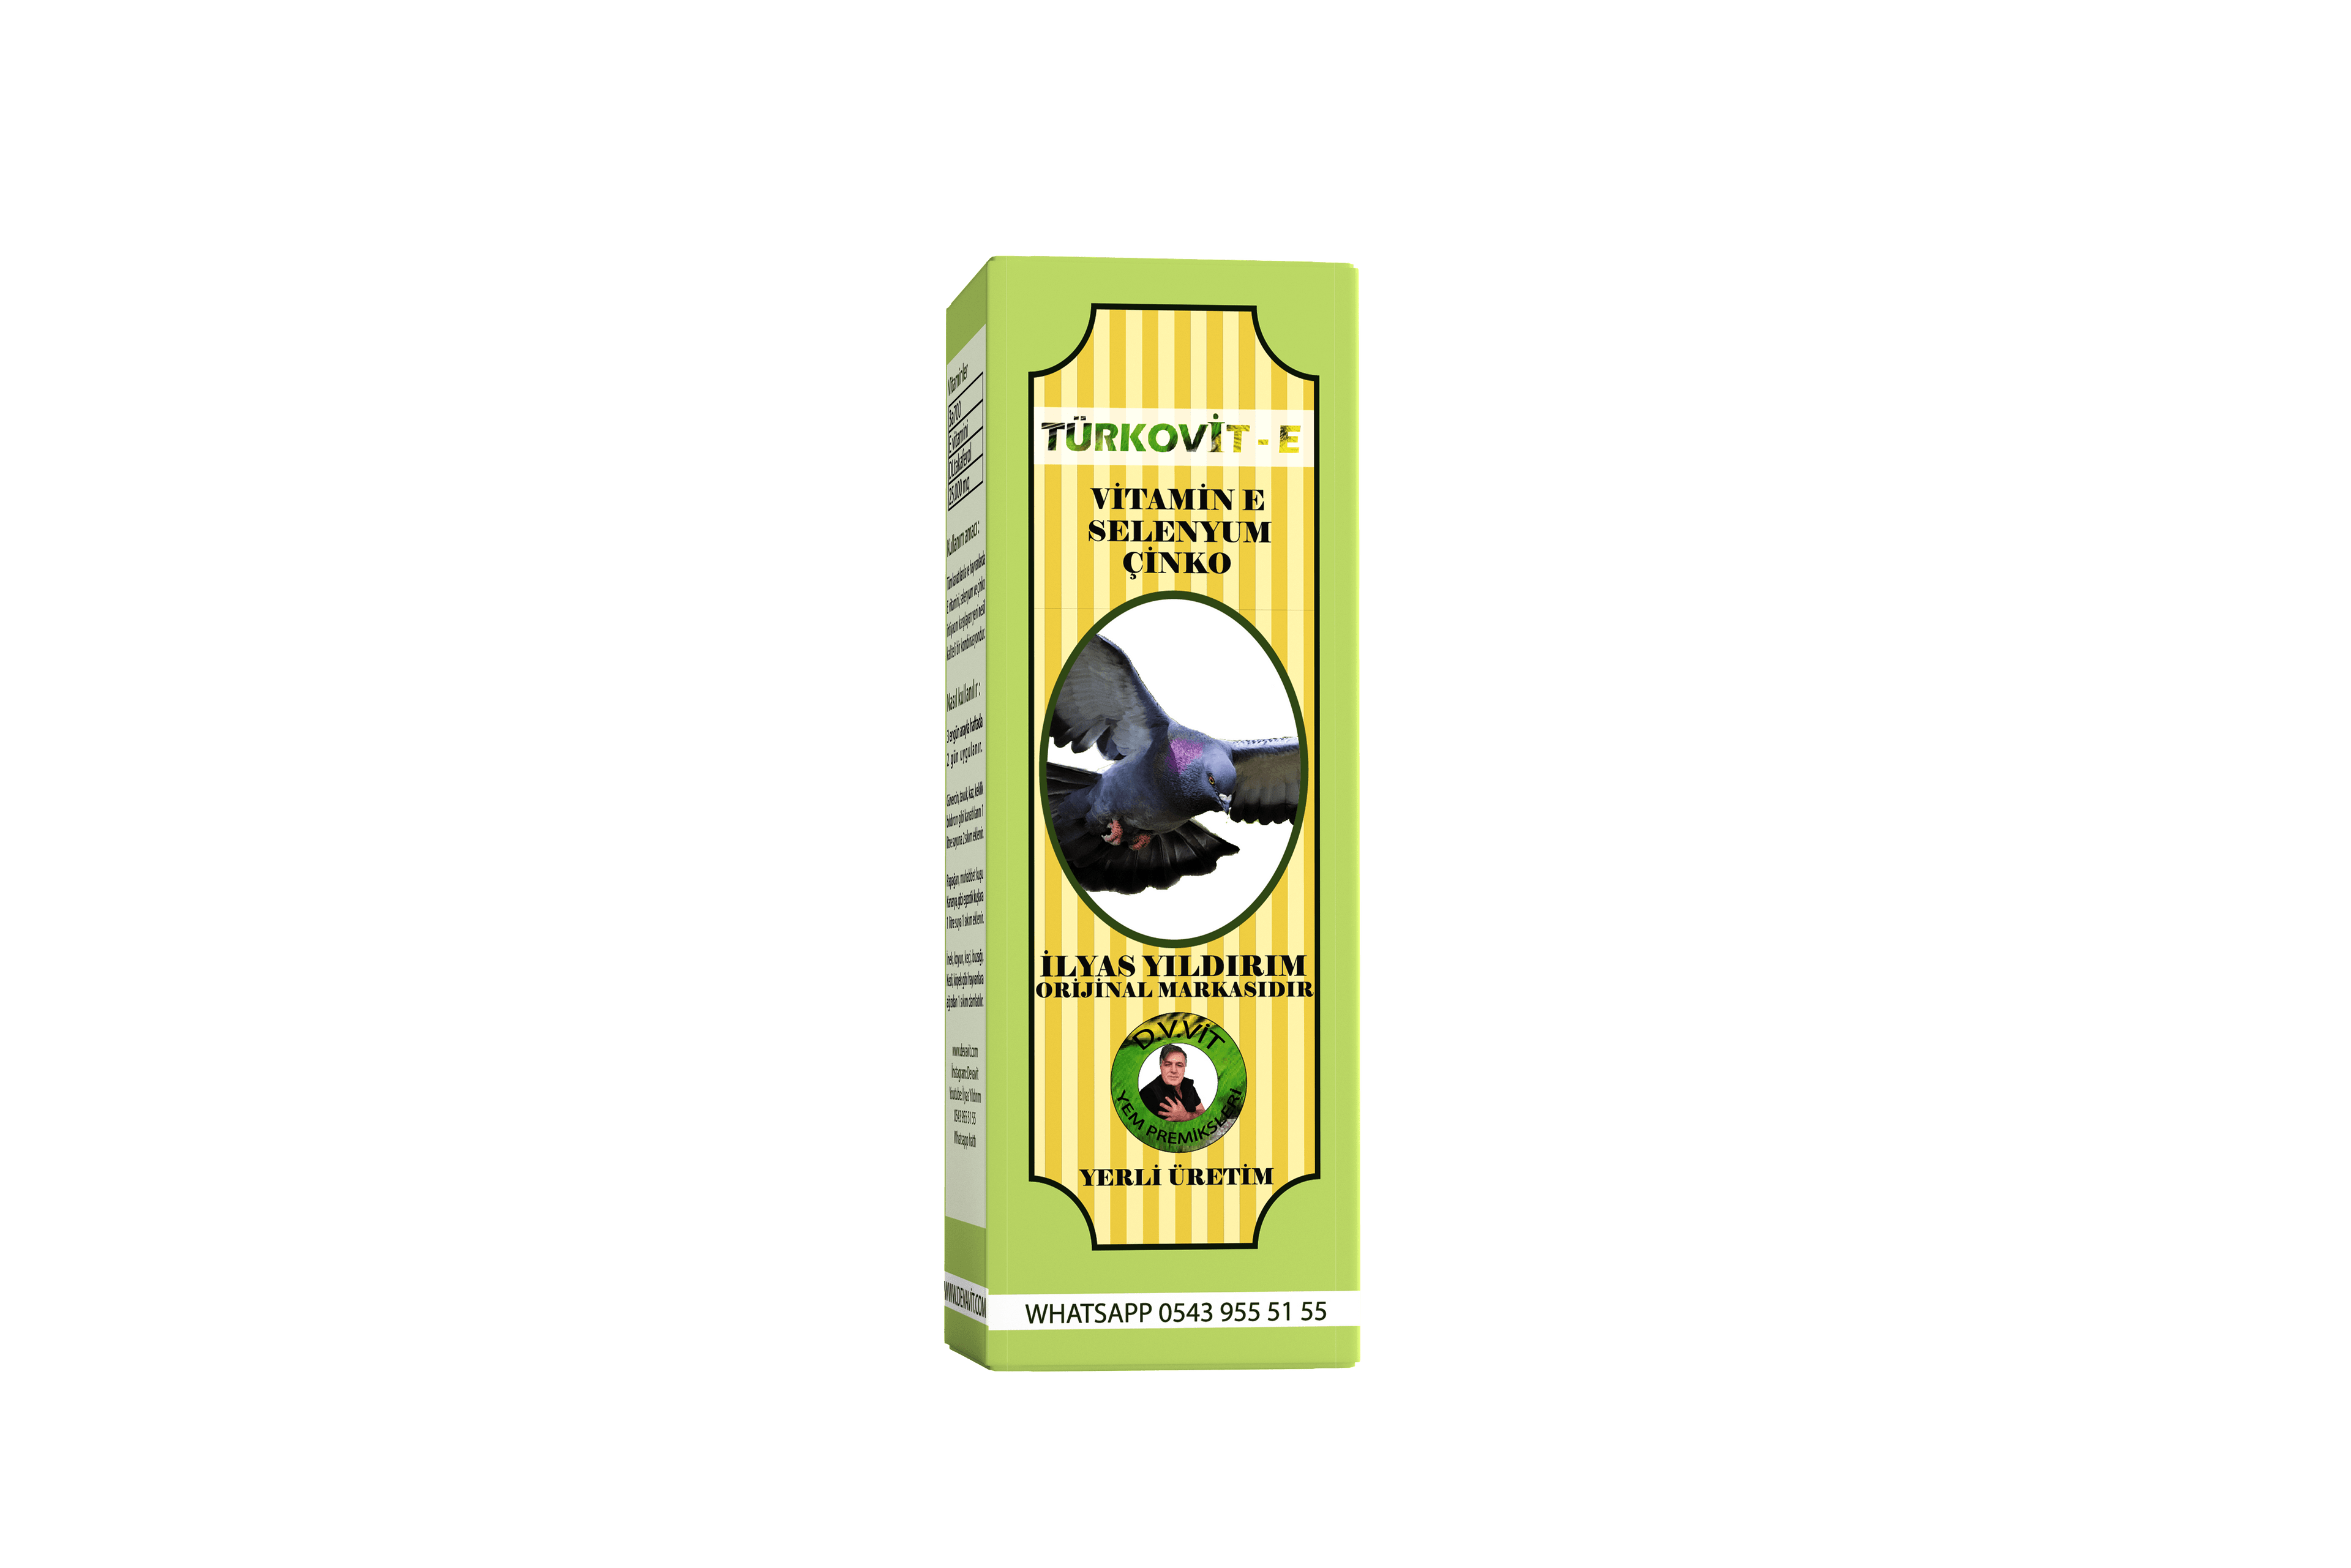 Kuşlar ve Güvercinler için Türkovit - E vitamini, Selenyum ve Çinko Destekli Sıvı Takviye 50 cc